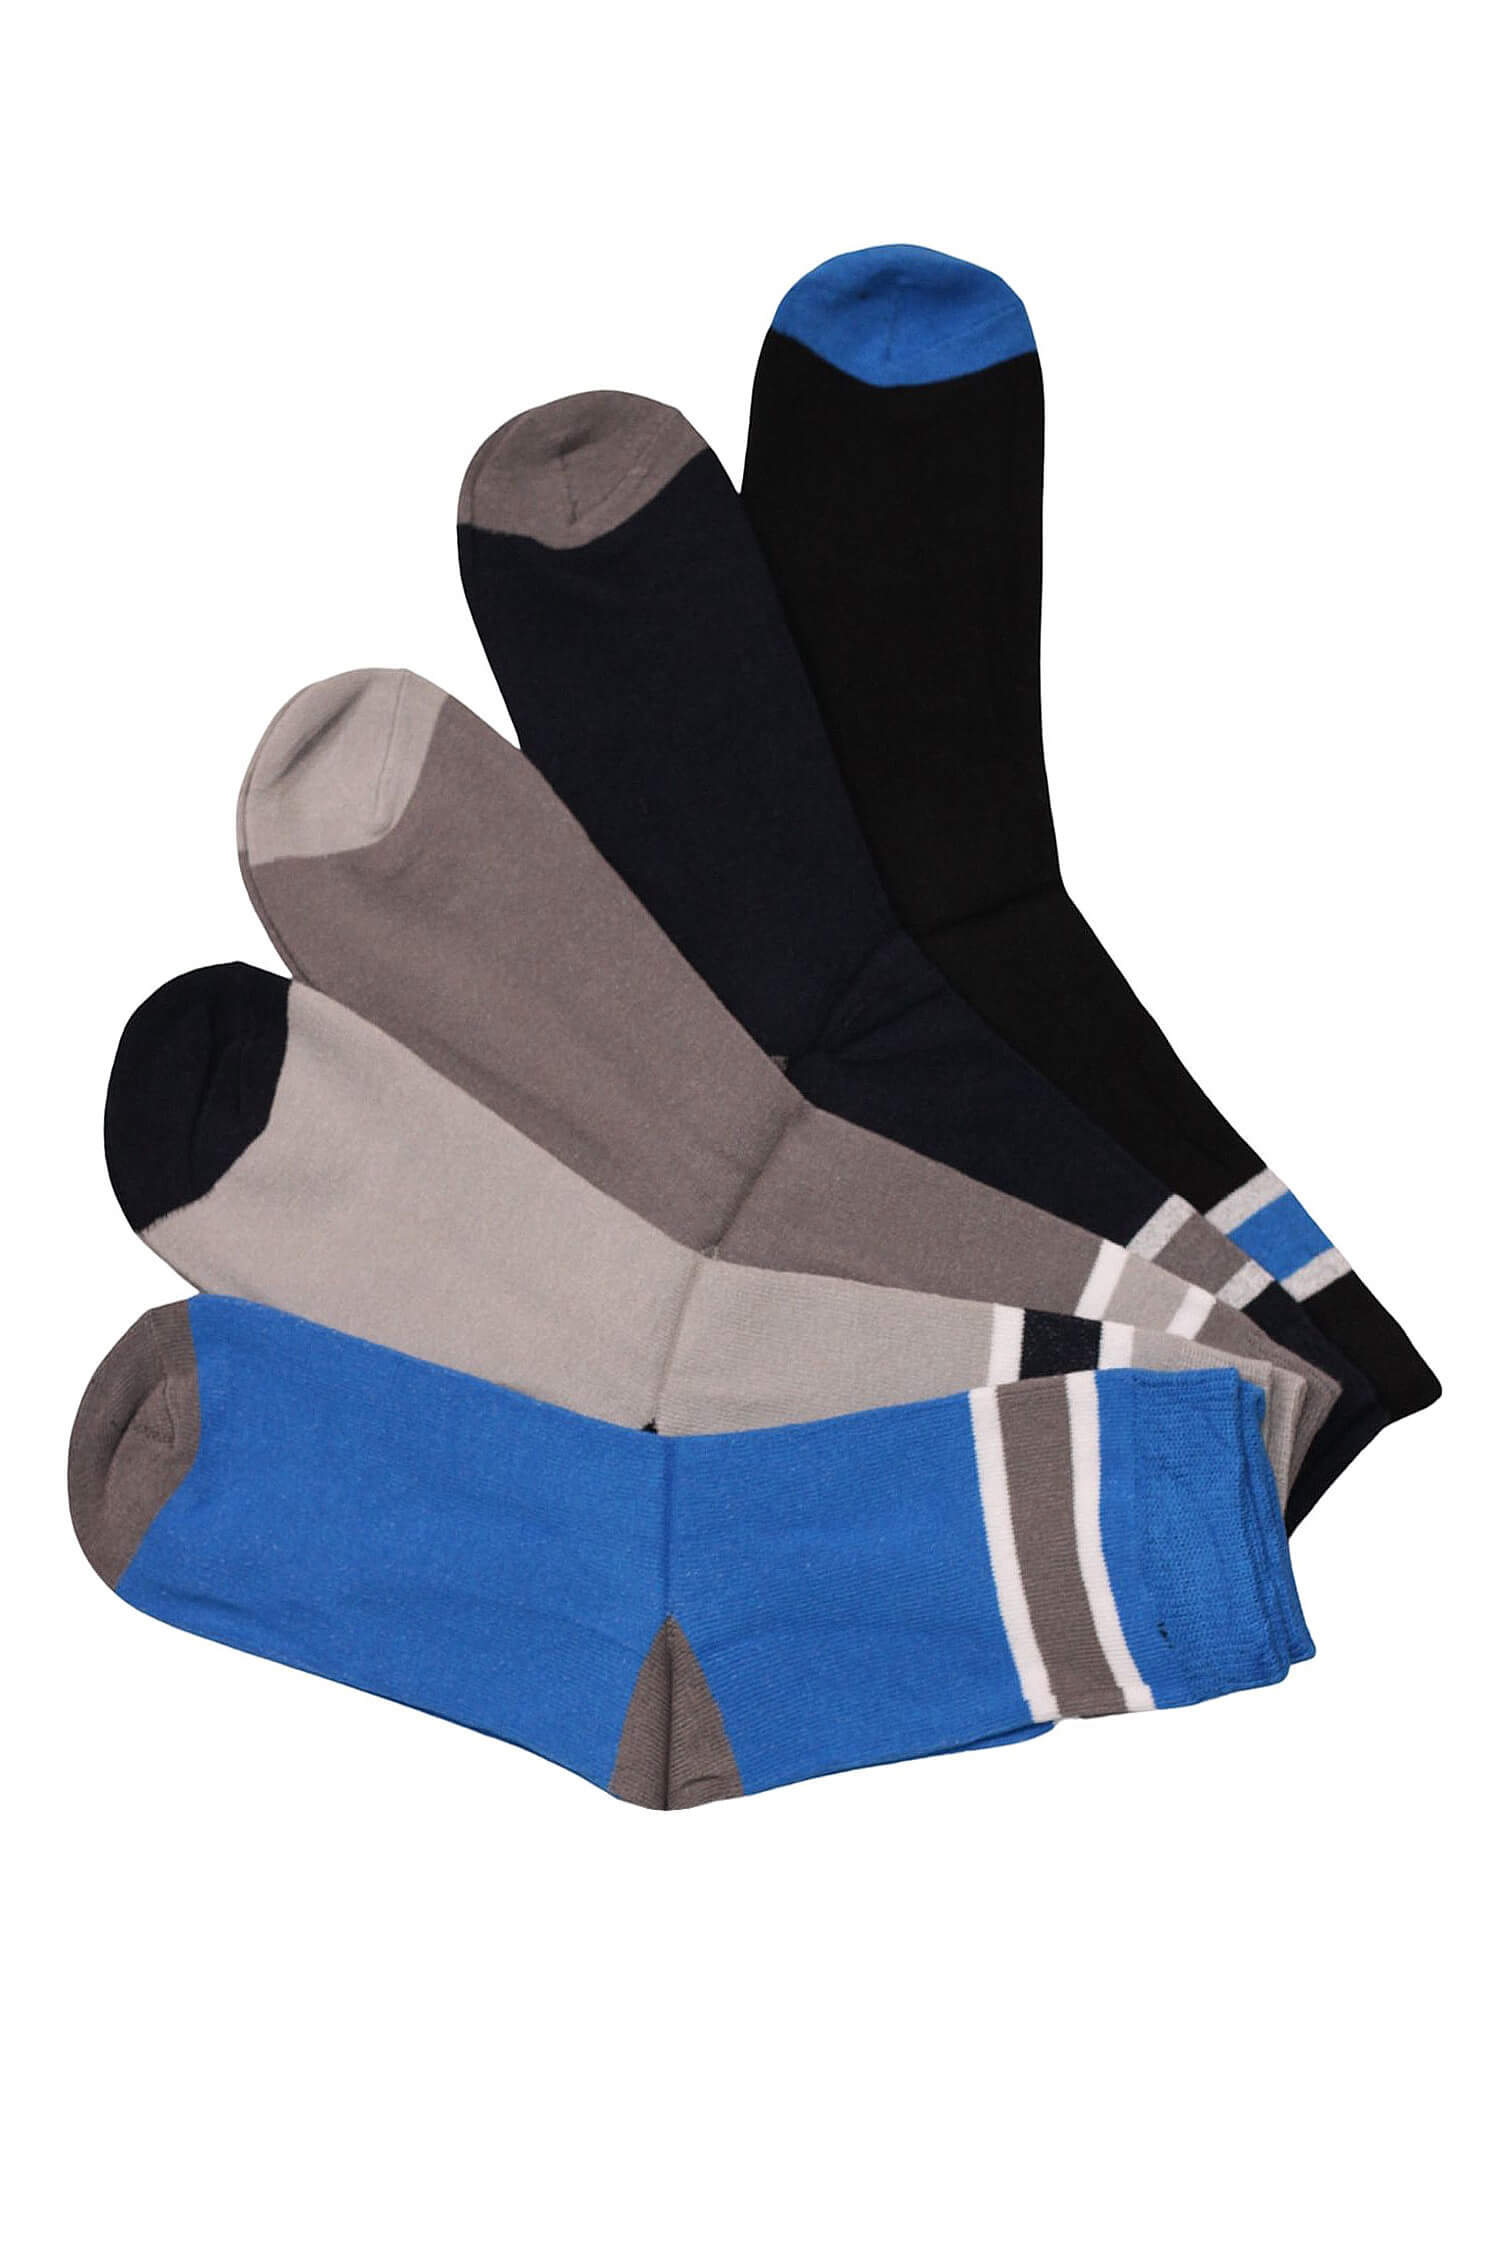 Vysoké pánské ponožky bavlna - 5bal. 39-42 vícebarevná